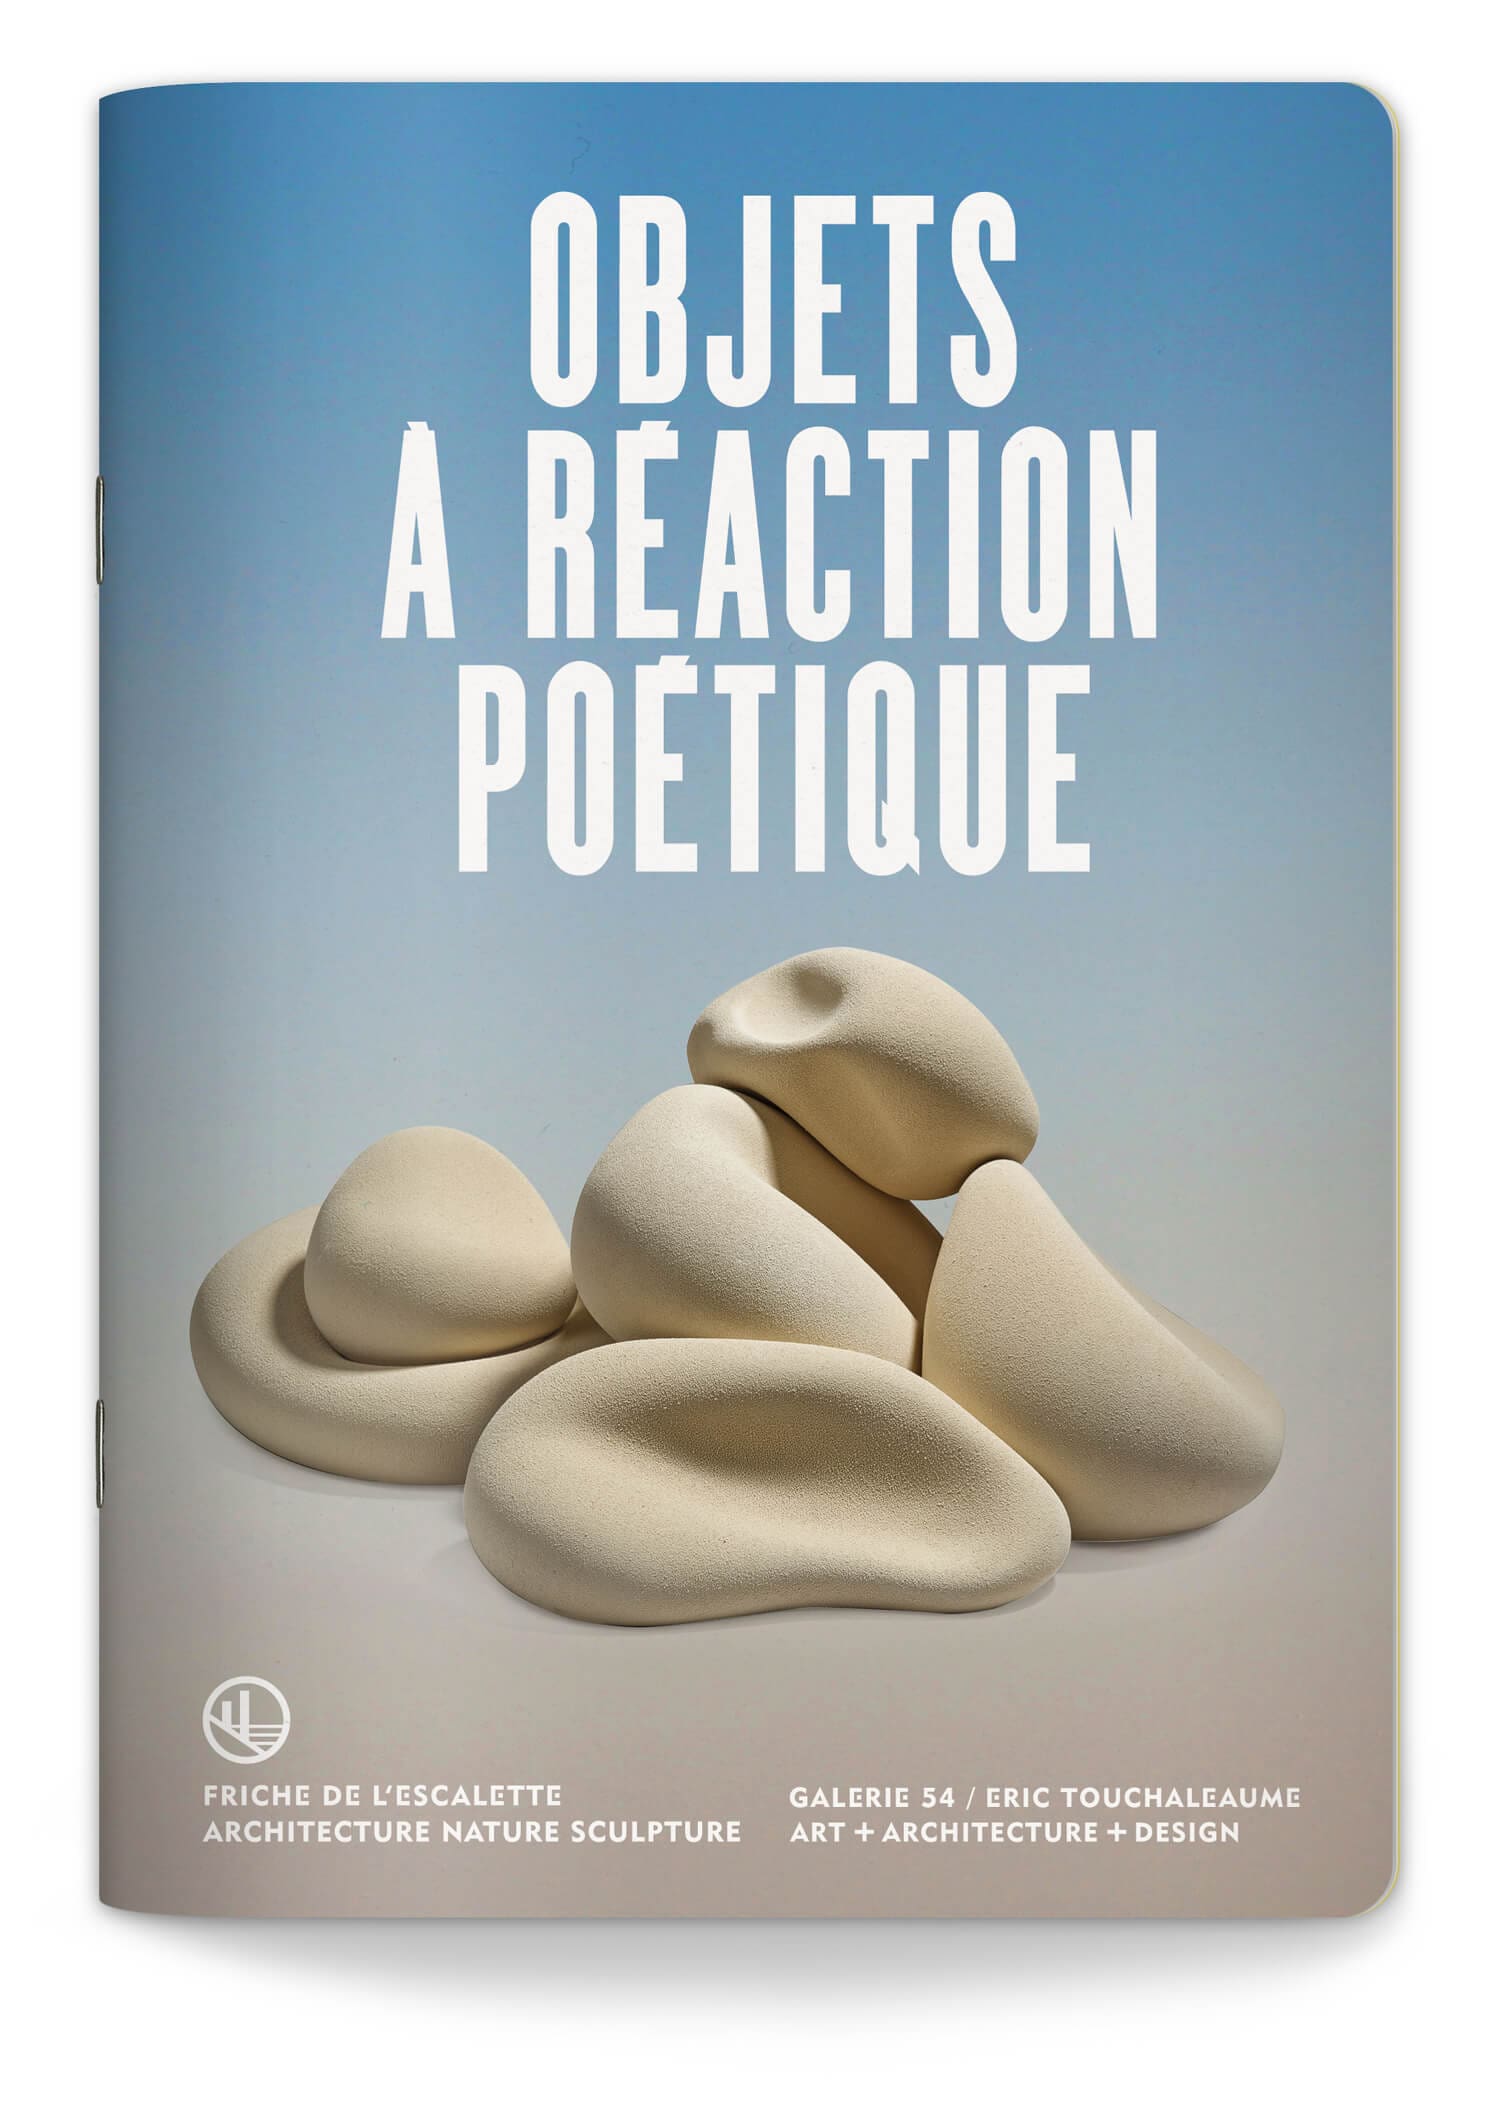 Couverture du livret de la saison 2022 de l'exposition Objets à réaction poétique à la Friche de l'escalette à Marseille, design IchetKar